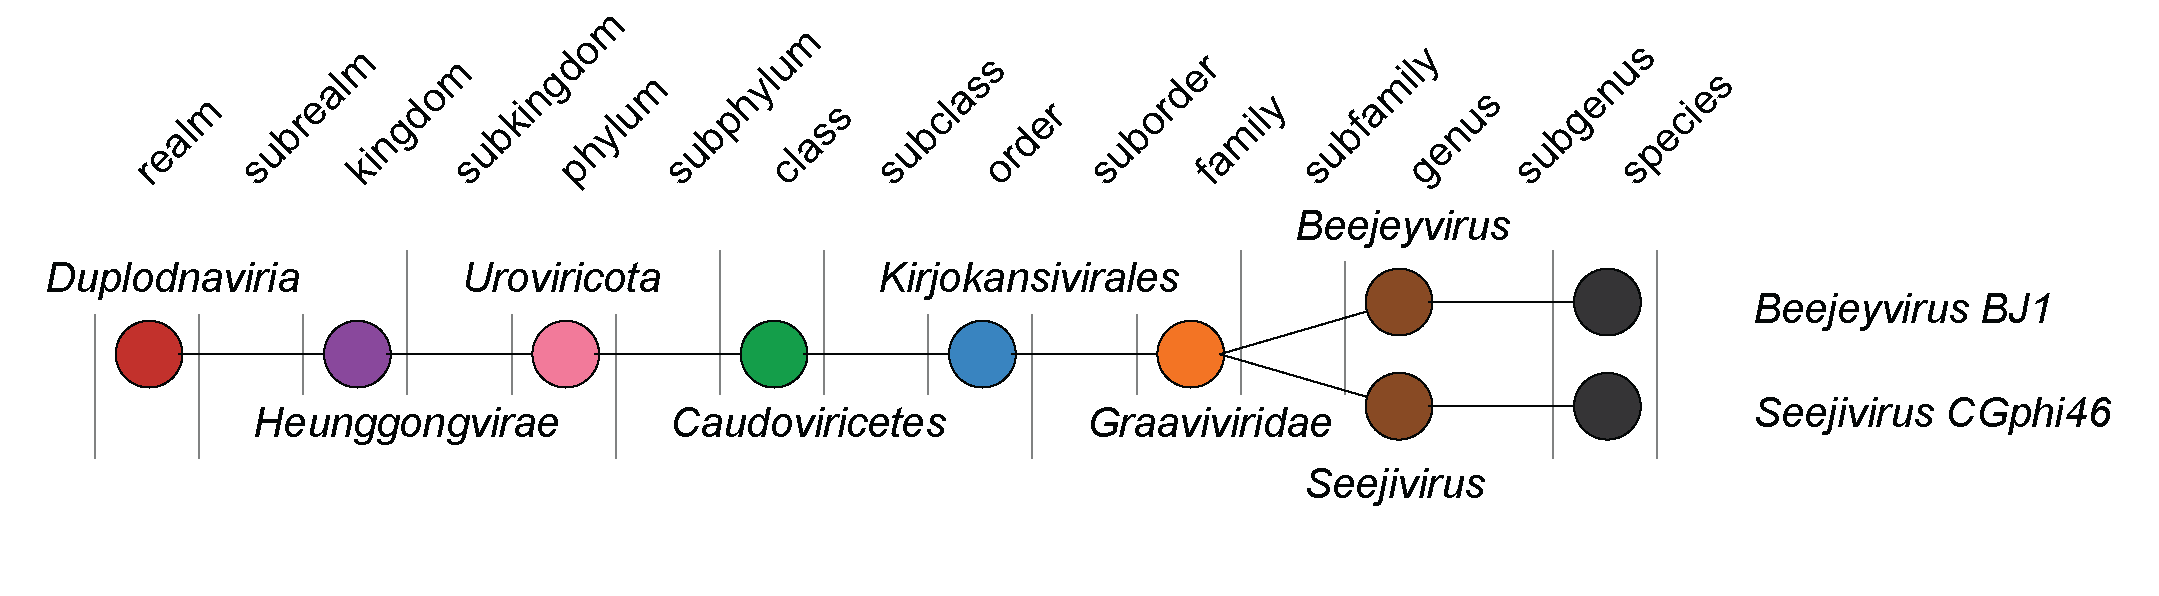 Graaviviridae taxonomy